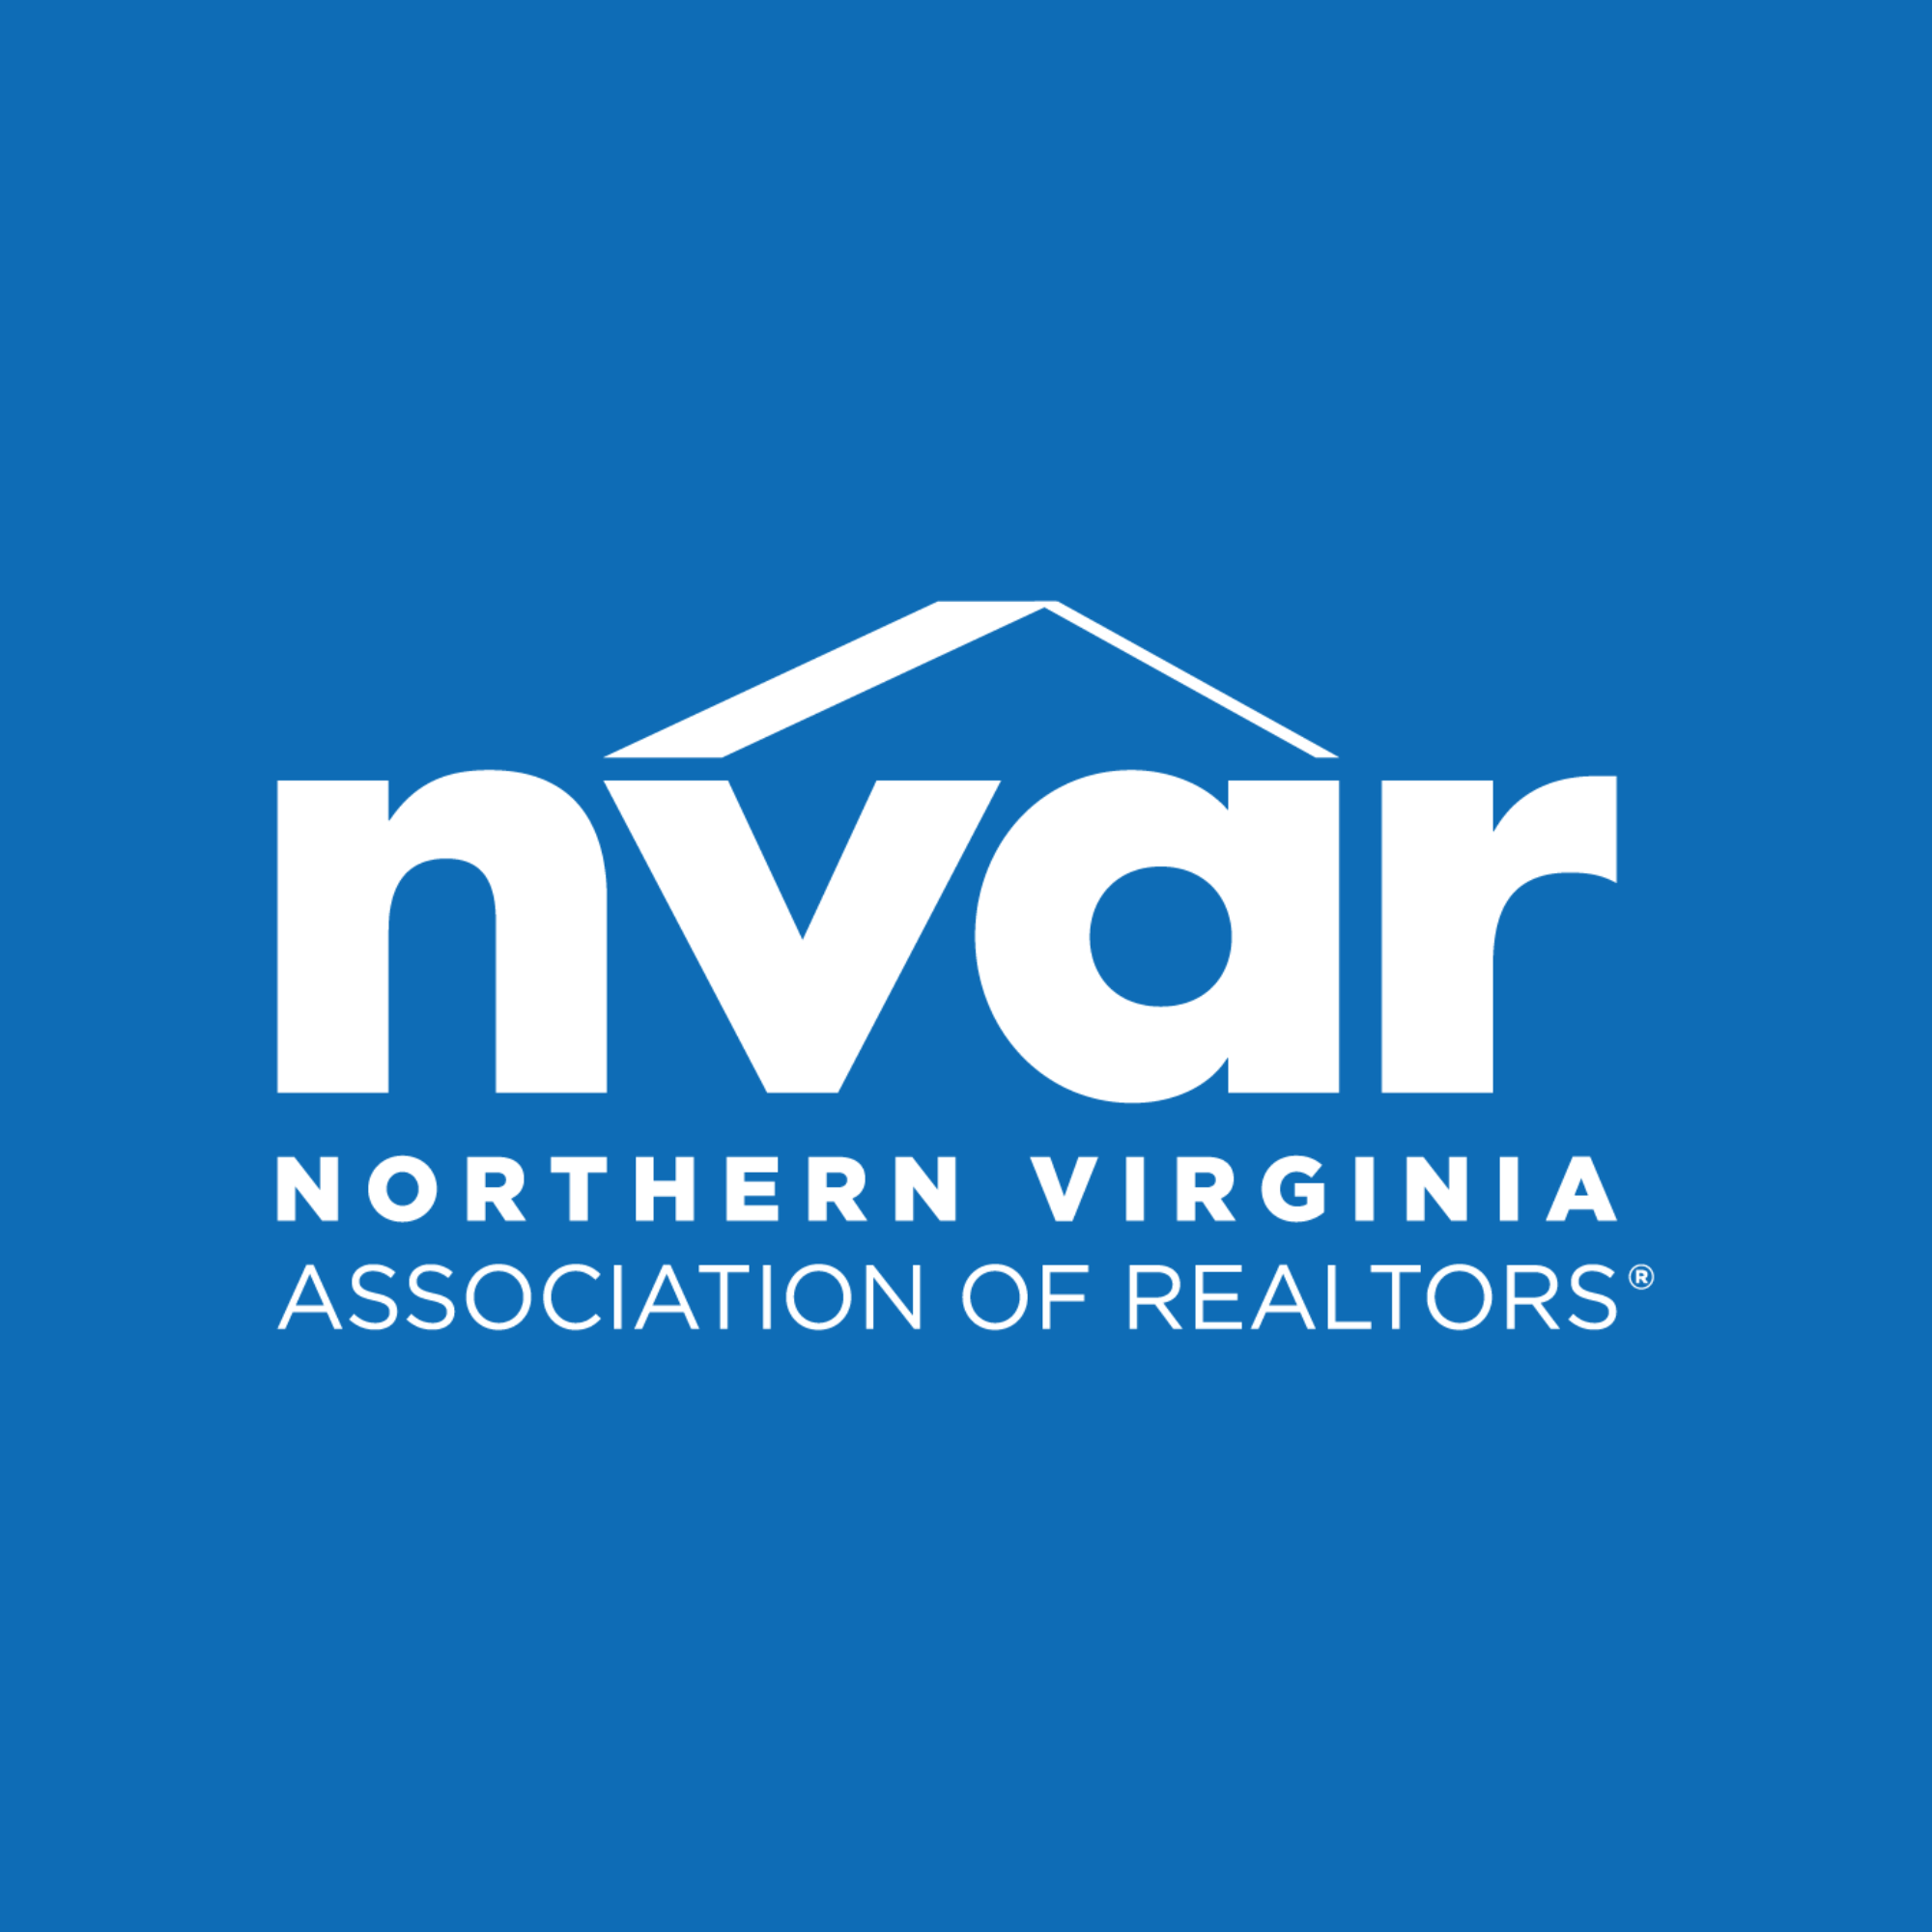 NVAR Logo